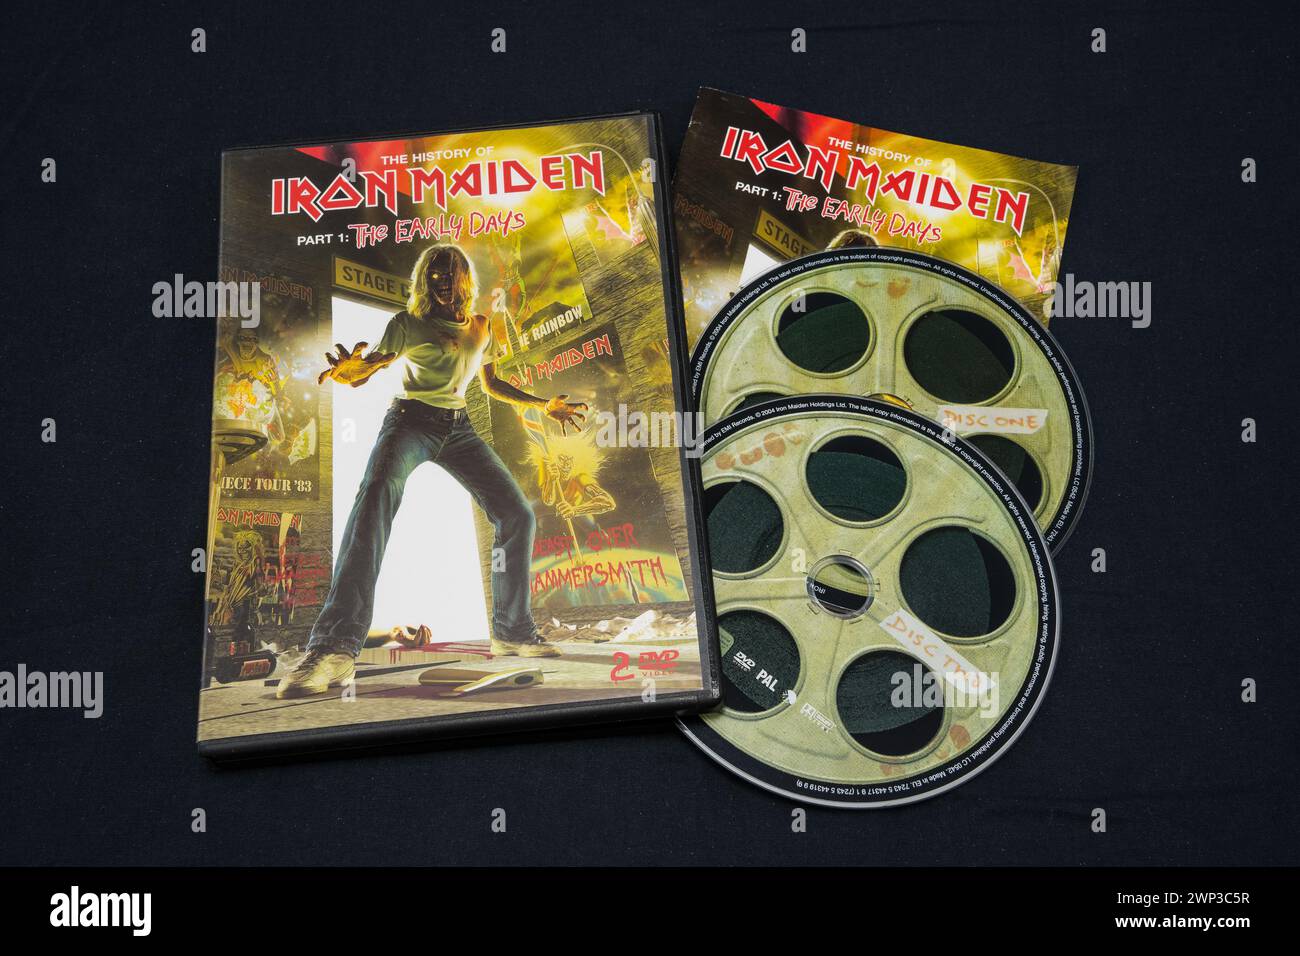 Iron Maiden - L'histoire d'Iron Maiden. Partie 1 : le DVD des premiers jours sur une surface sombre. Lahti, Finlande. 30 décembre 2023. Banque D'Images